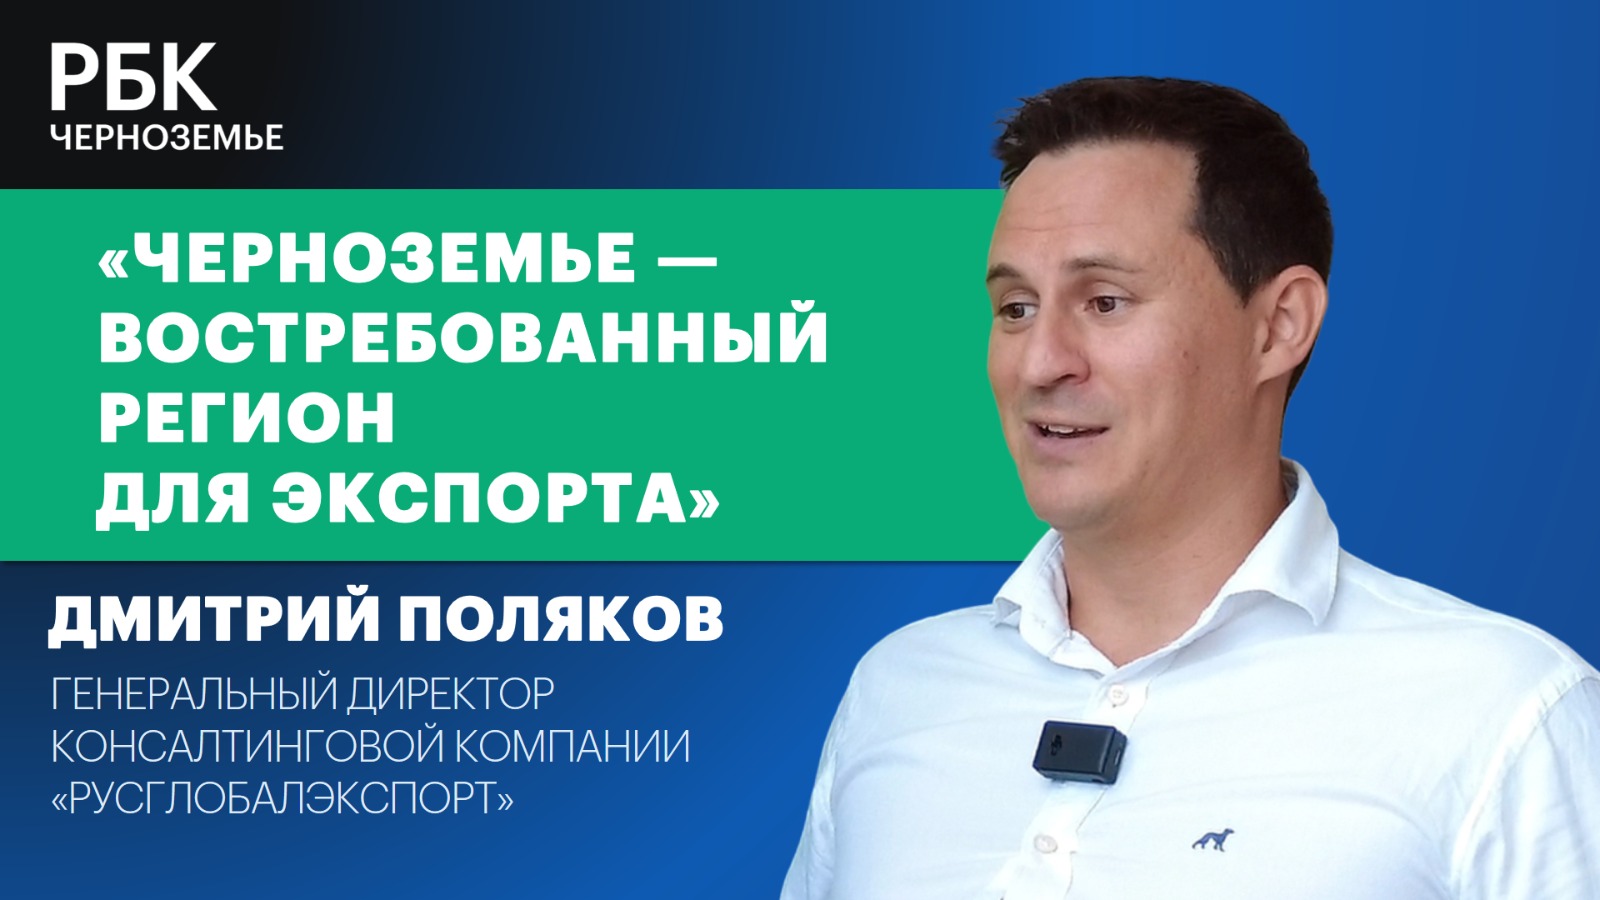 Дмитрий Поляков: «Черноземье — востребованный регион для экспорта»